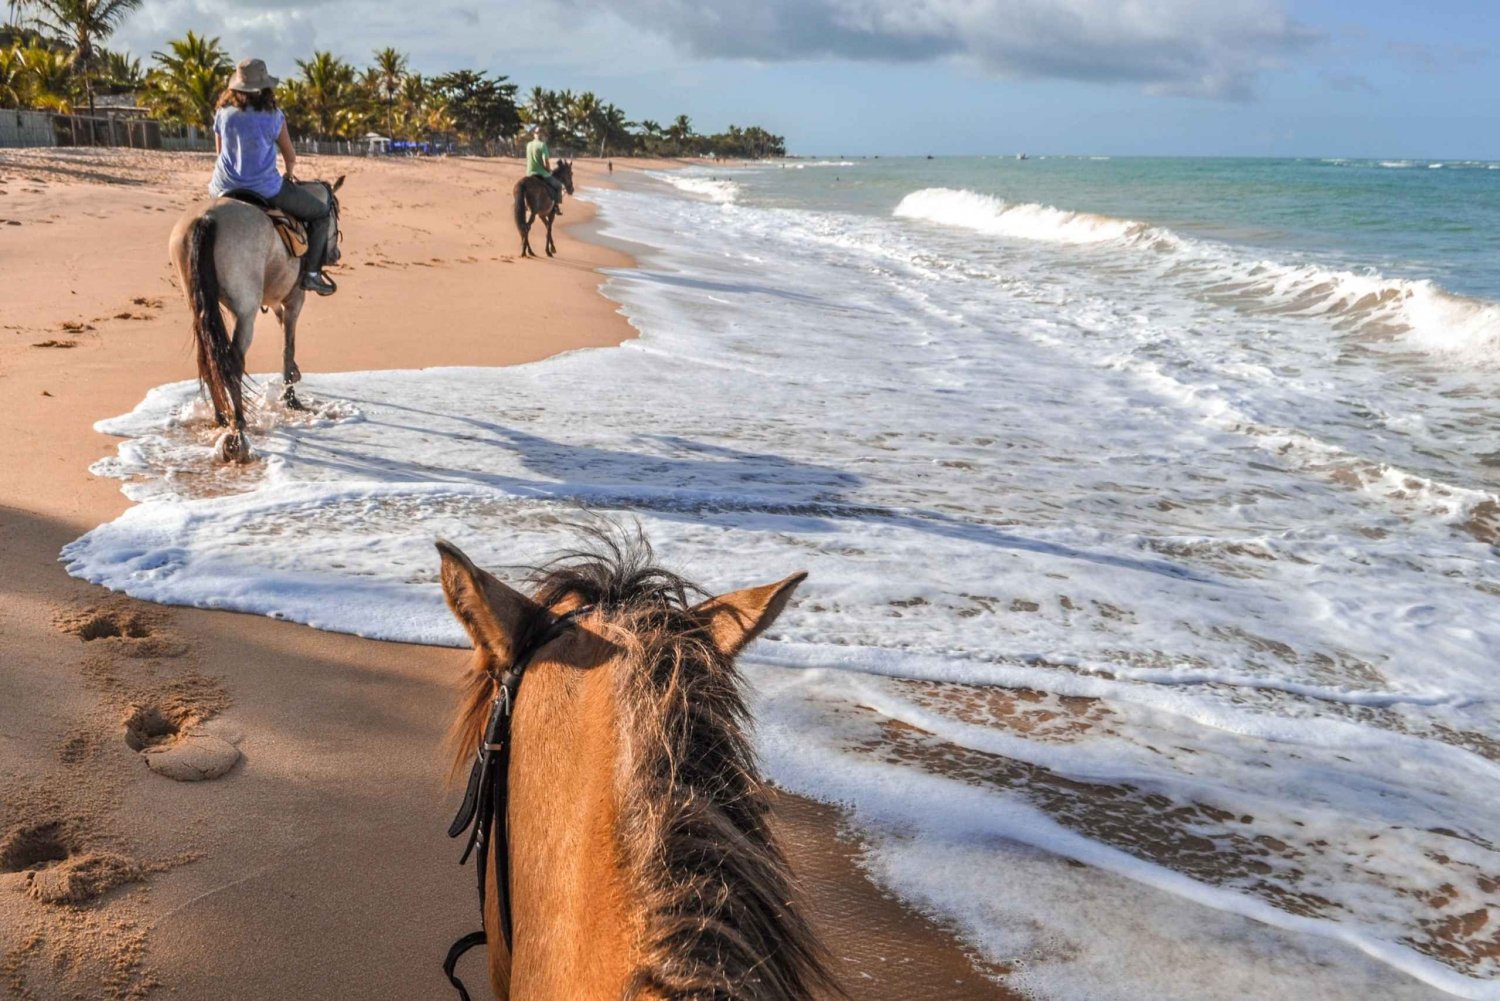 Palomino: Excursión a caballo por la playa de Palomino